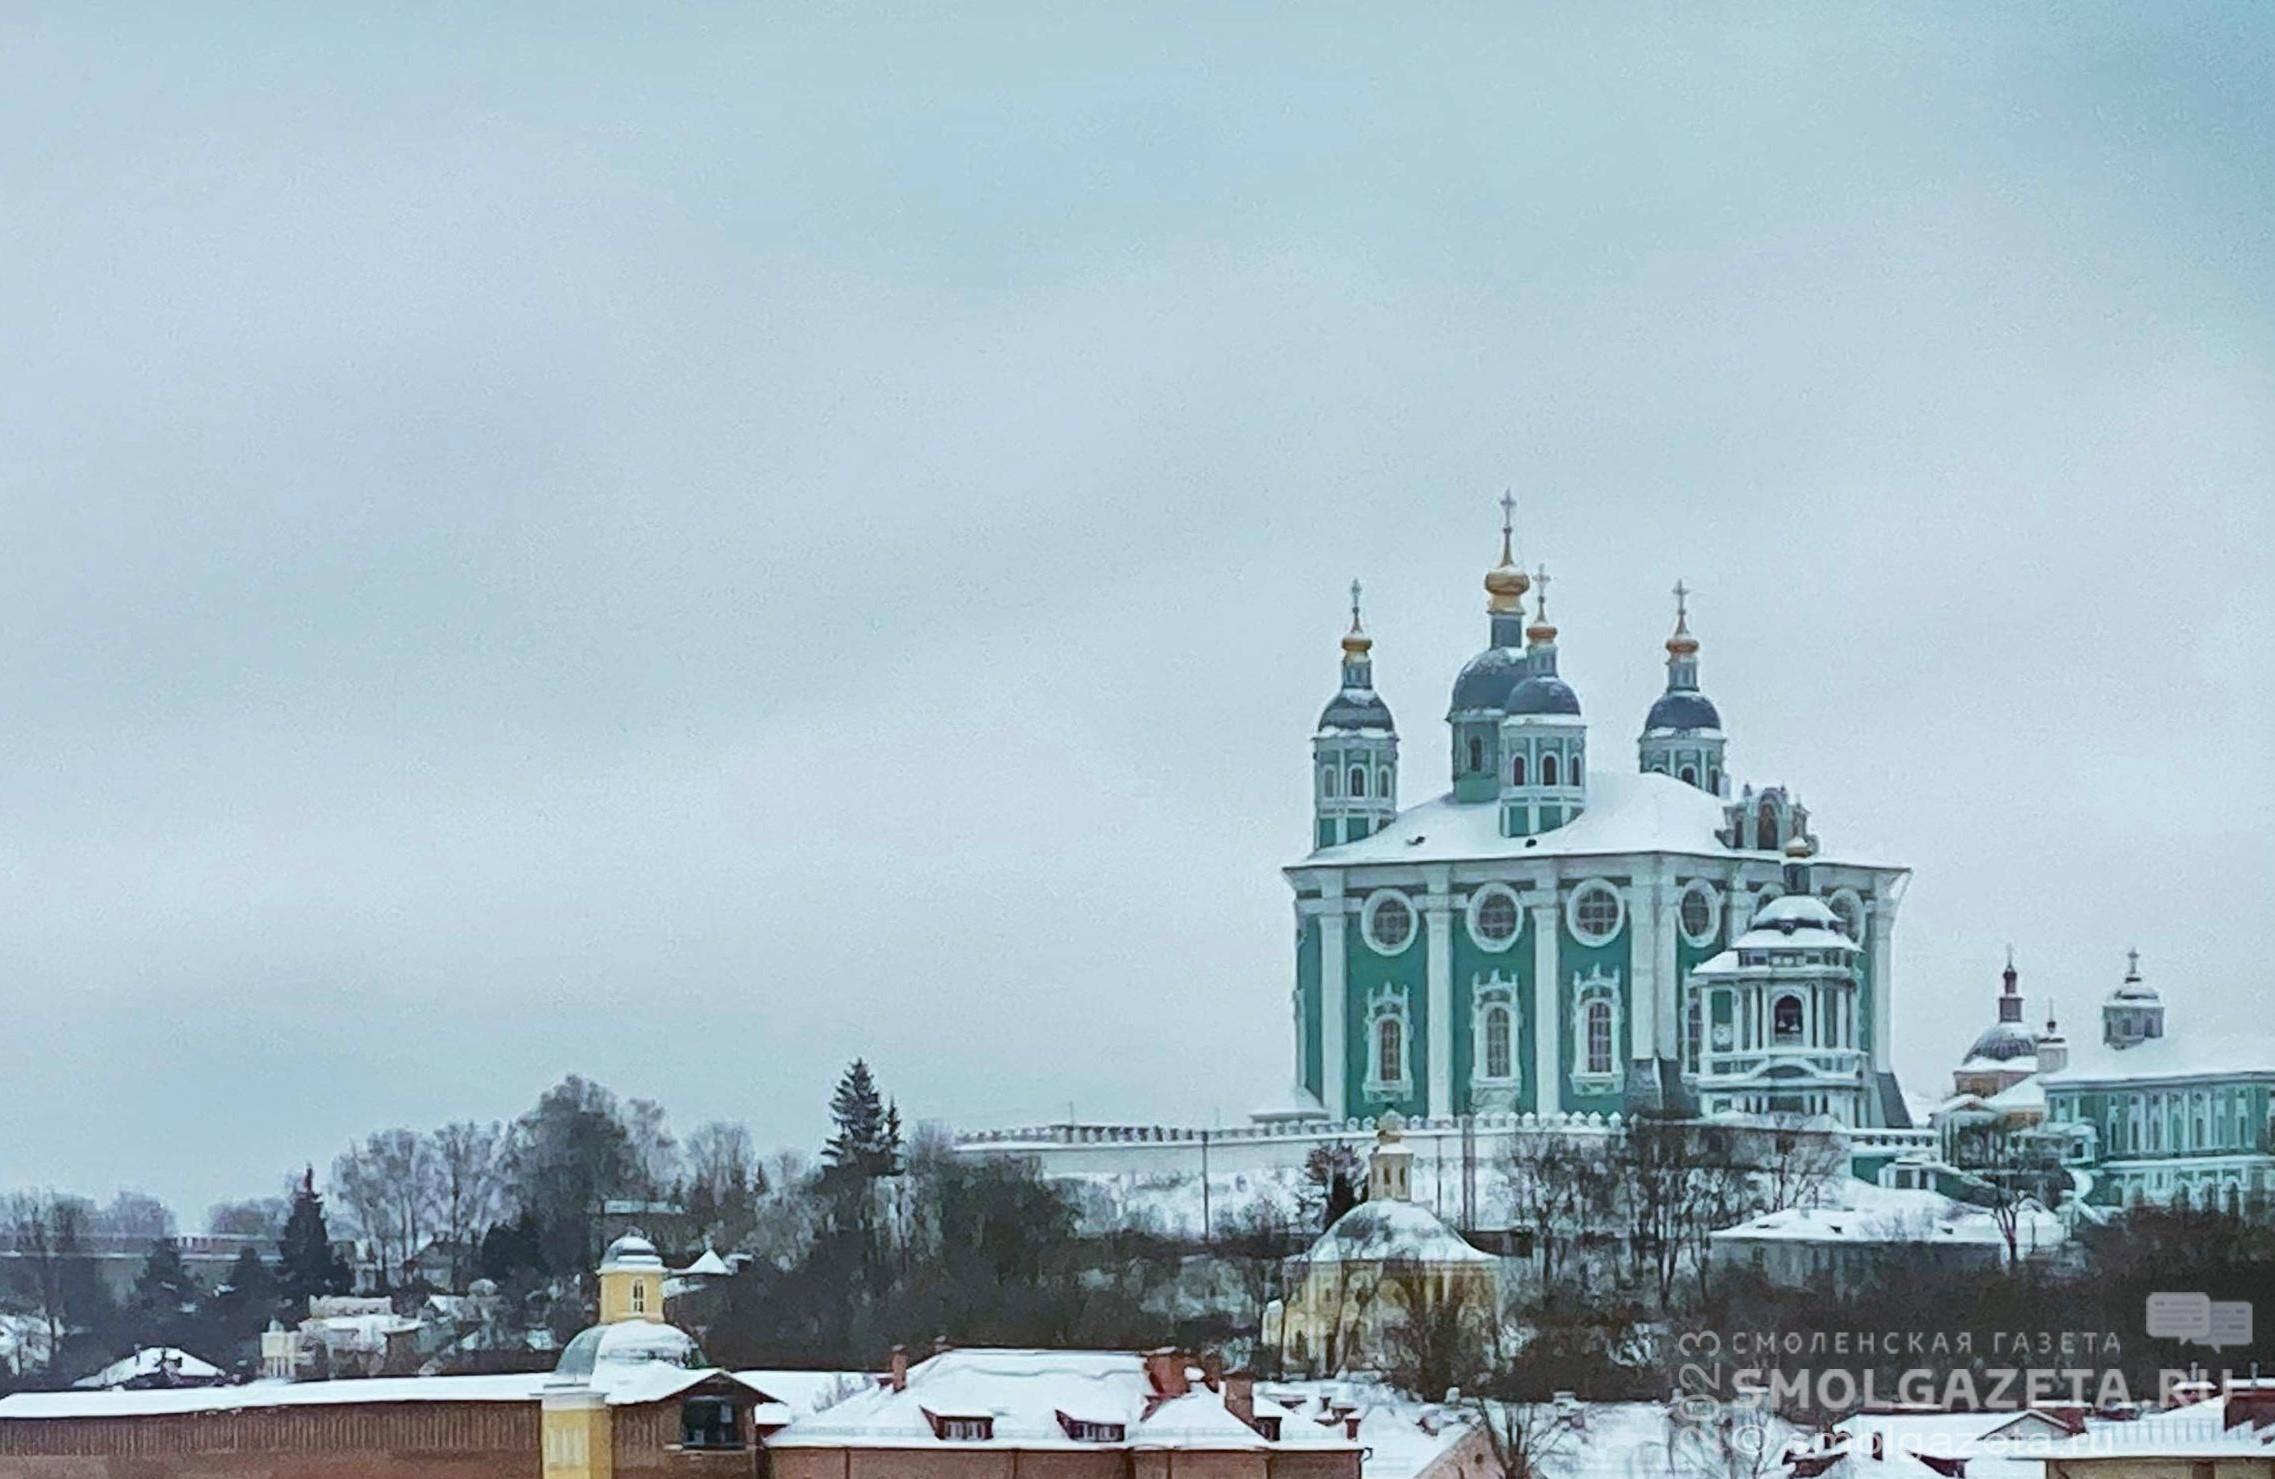 Синоптики рассказали, какая погода ждет жителей Смоленской области 22 февраля